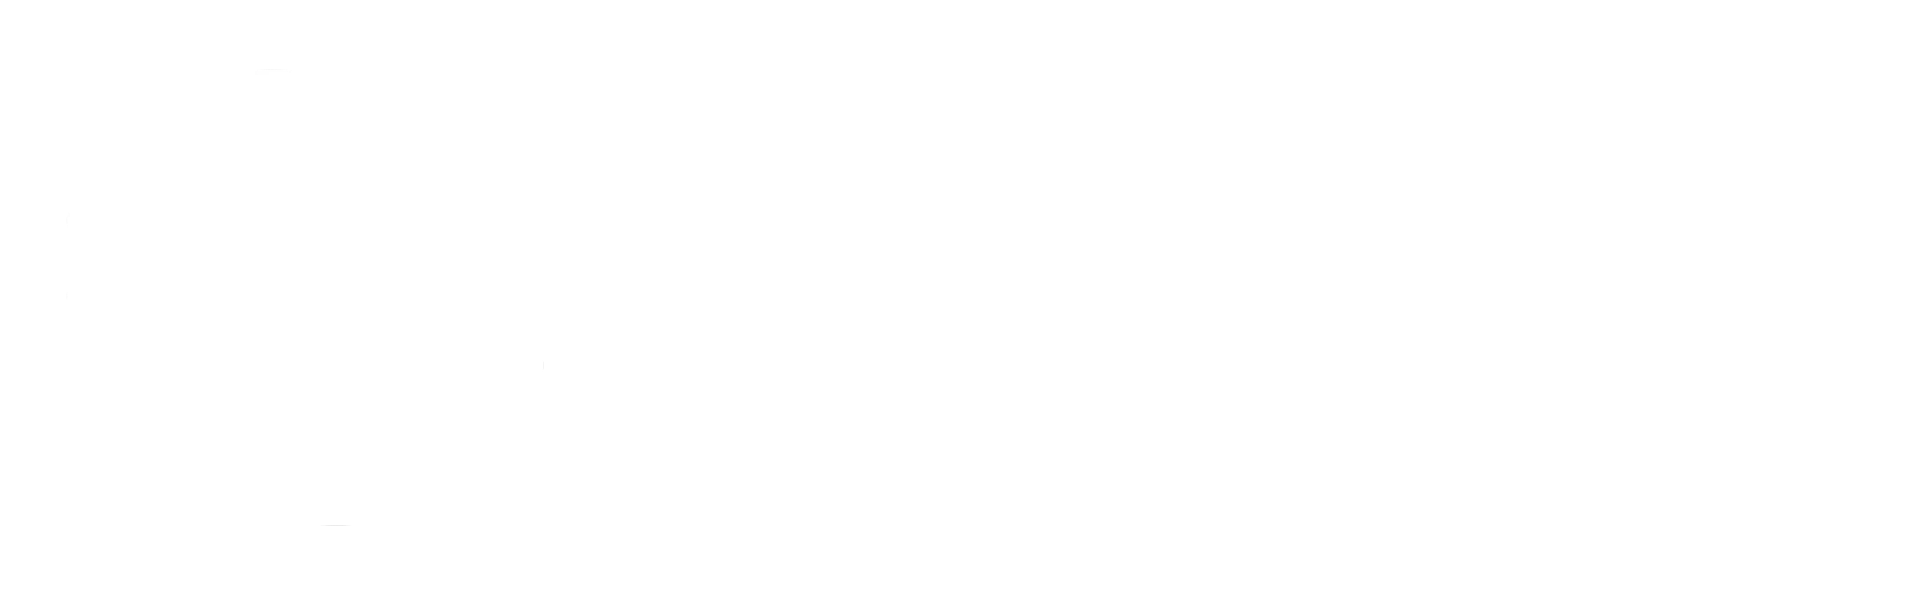 元宇宙设计周——中国高校数字创意设计大赛